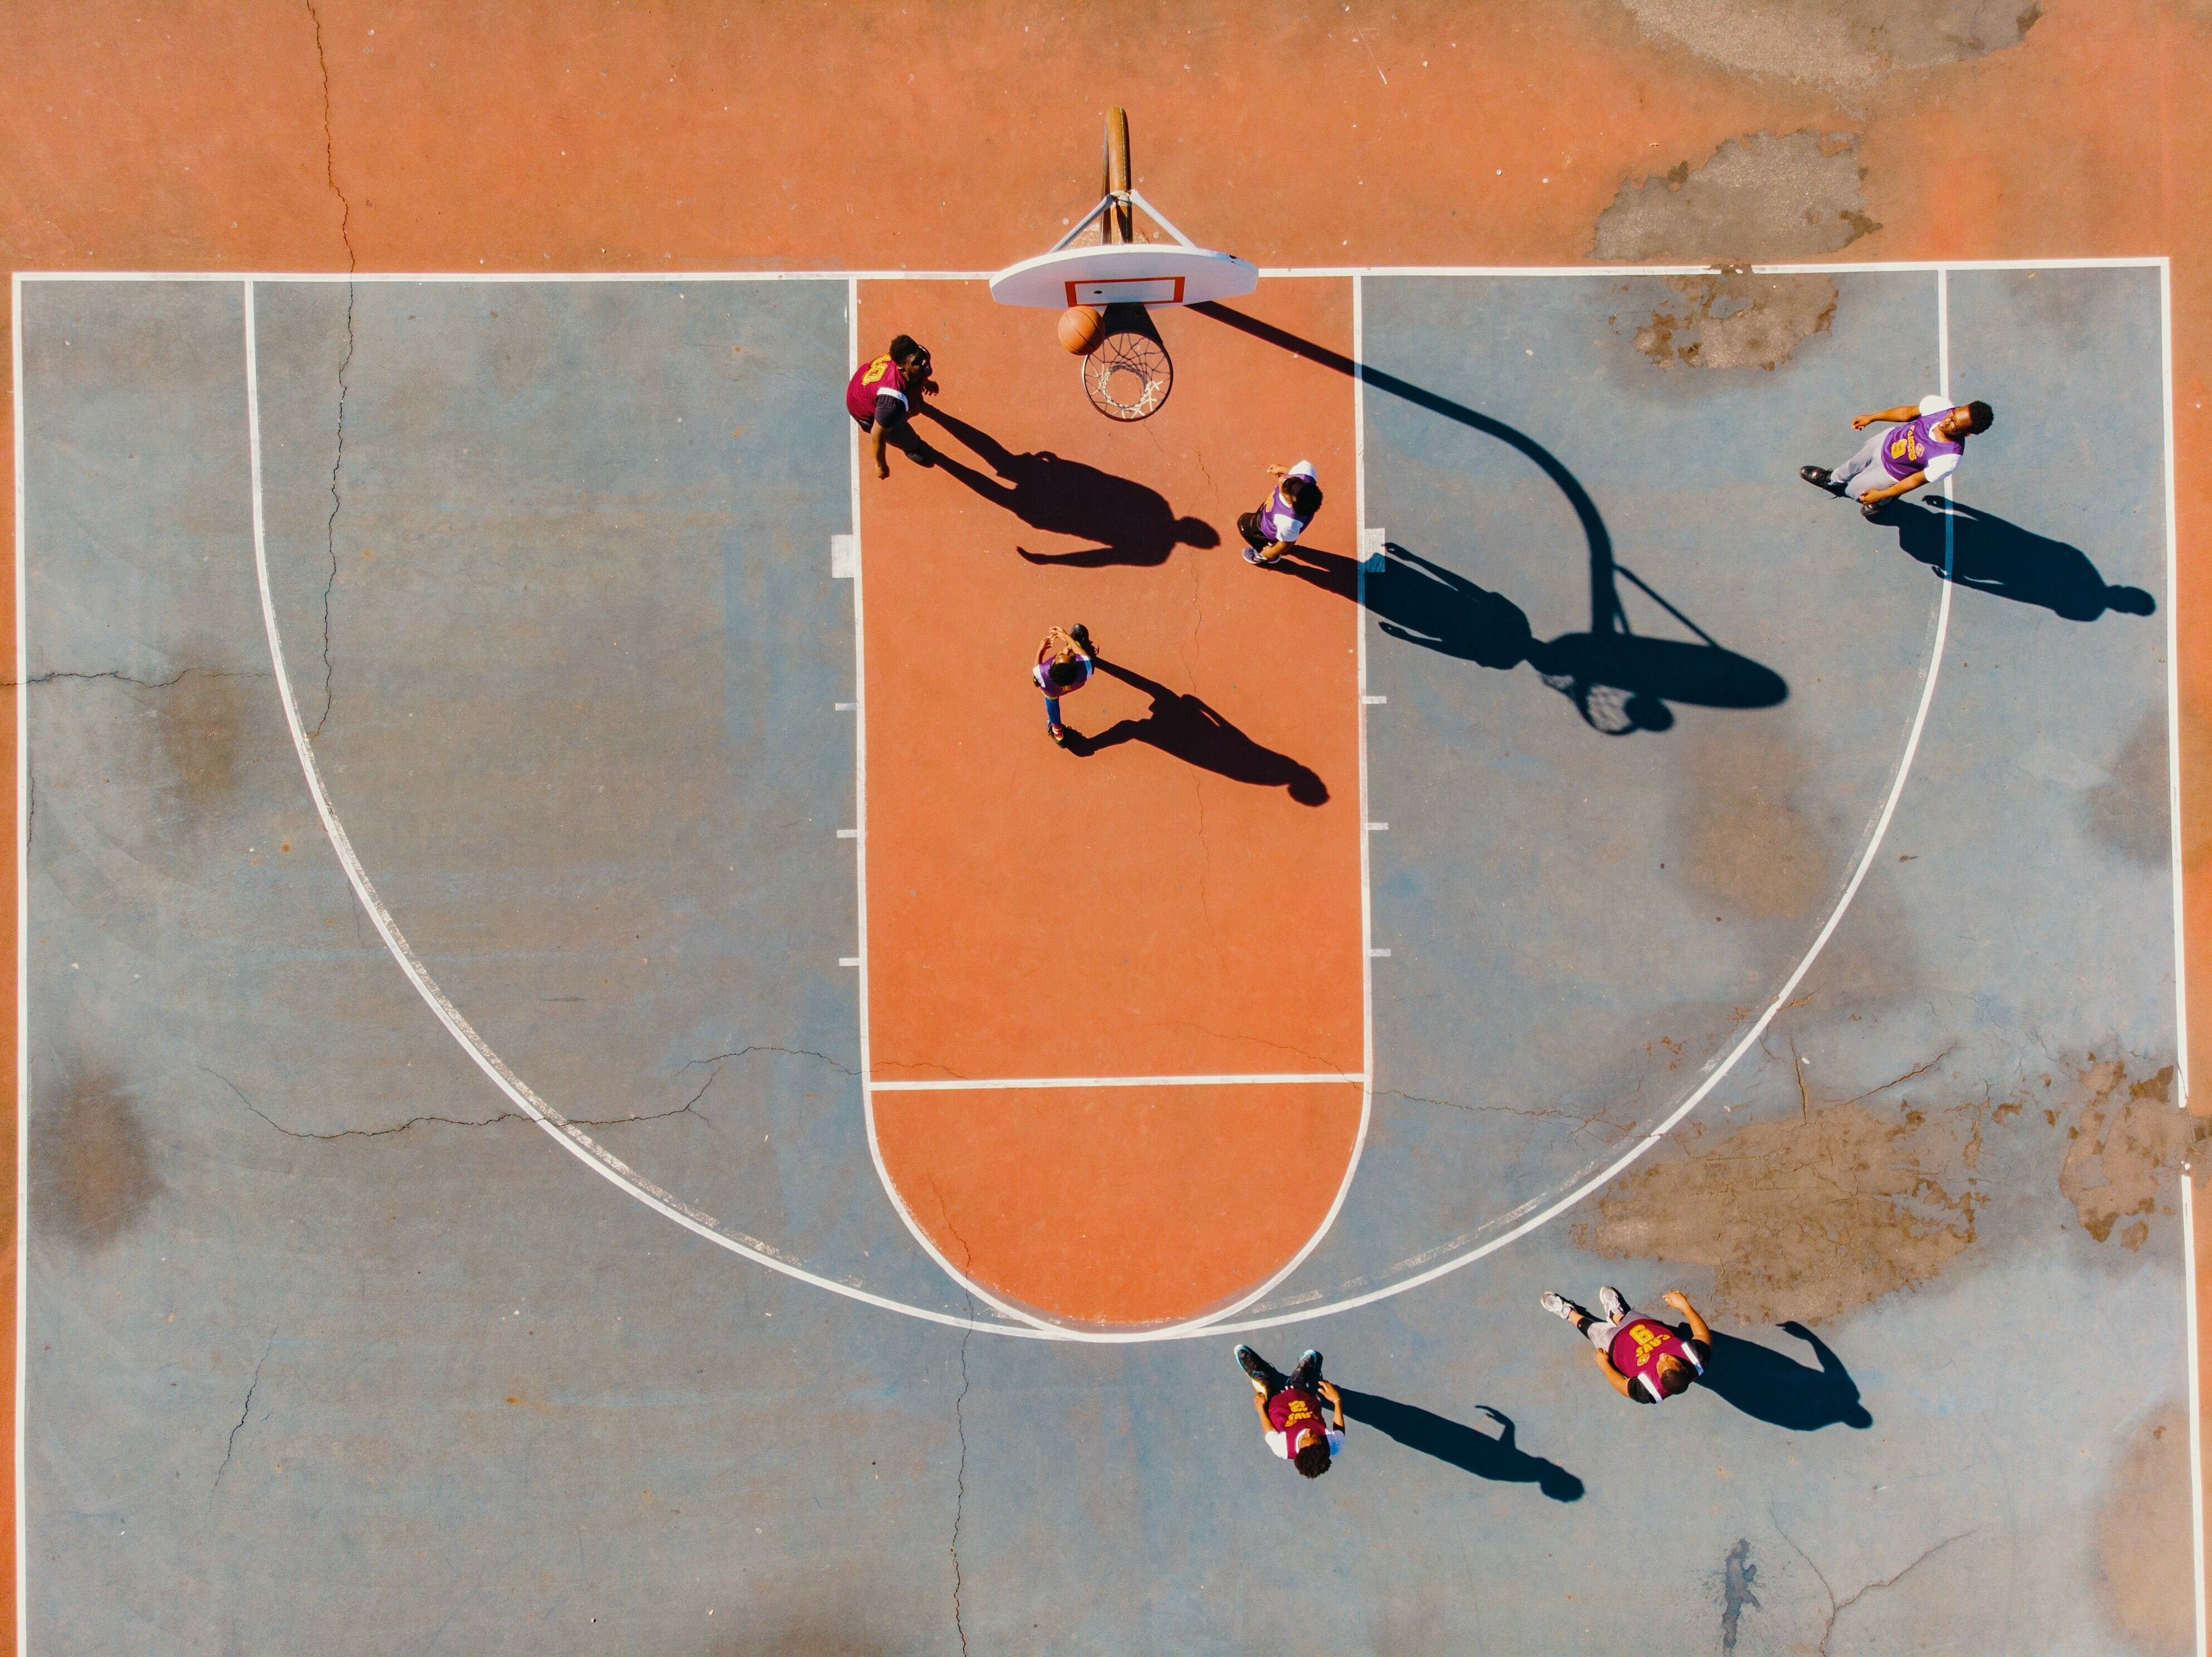 Vista superior de uma quadra de basquete, na qual seis pessoas jogam e uma marca cesta.